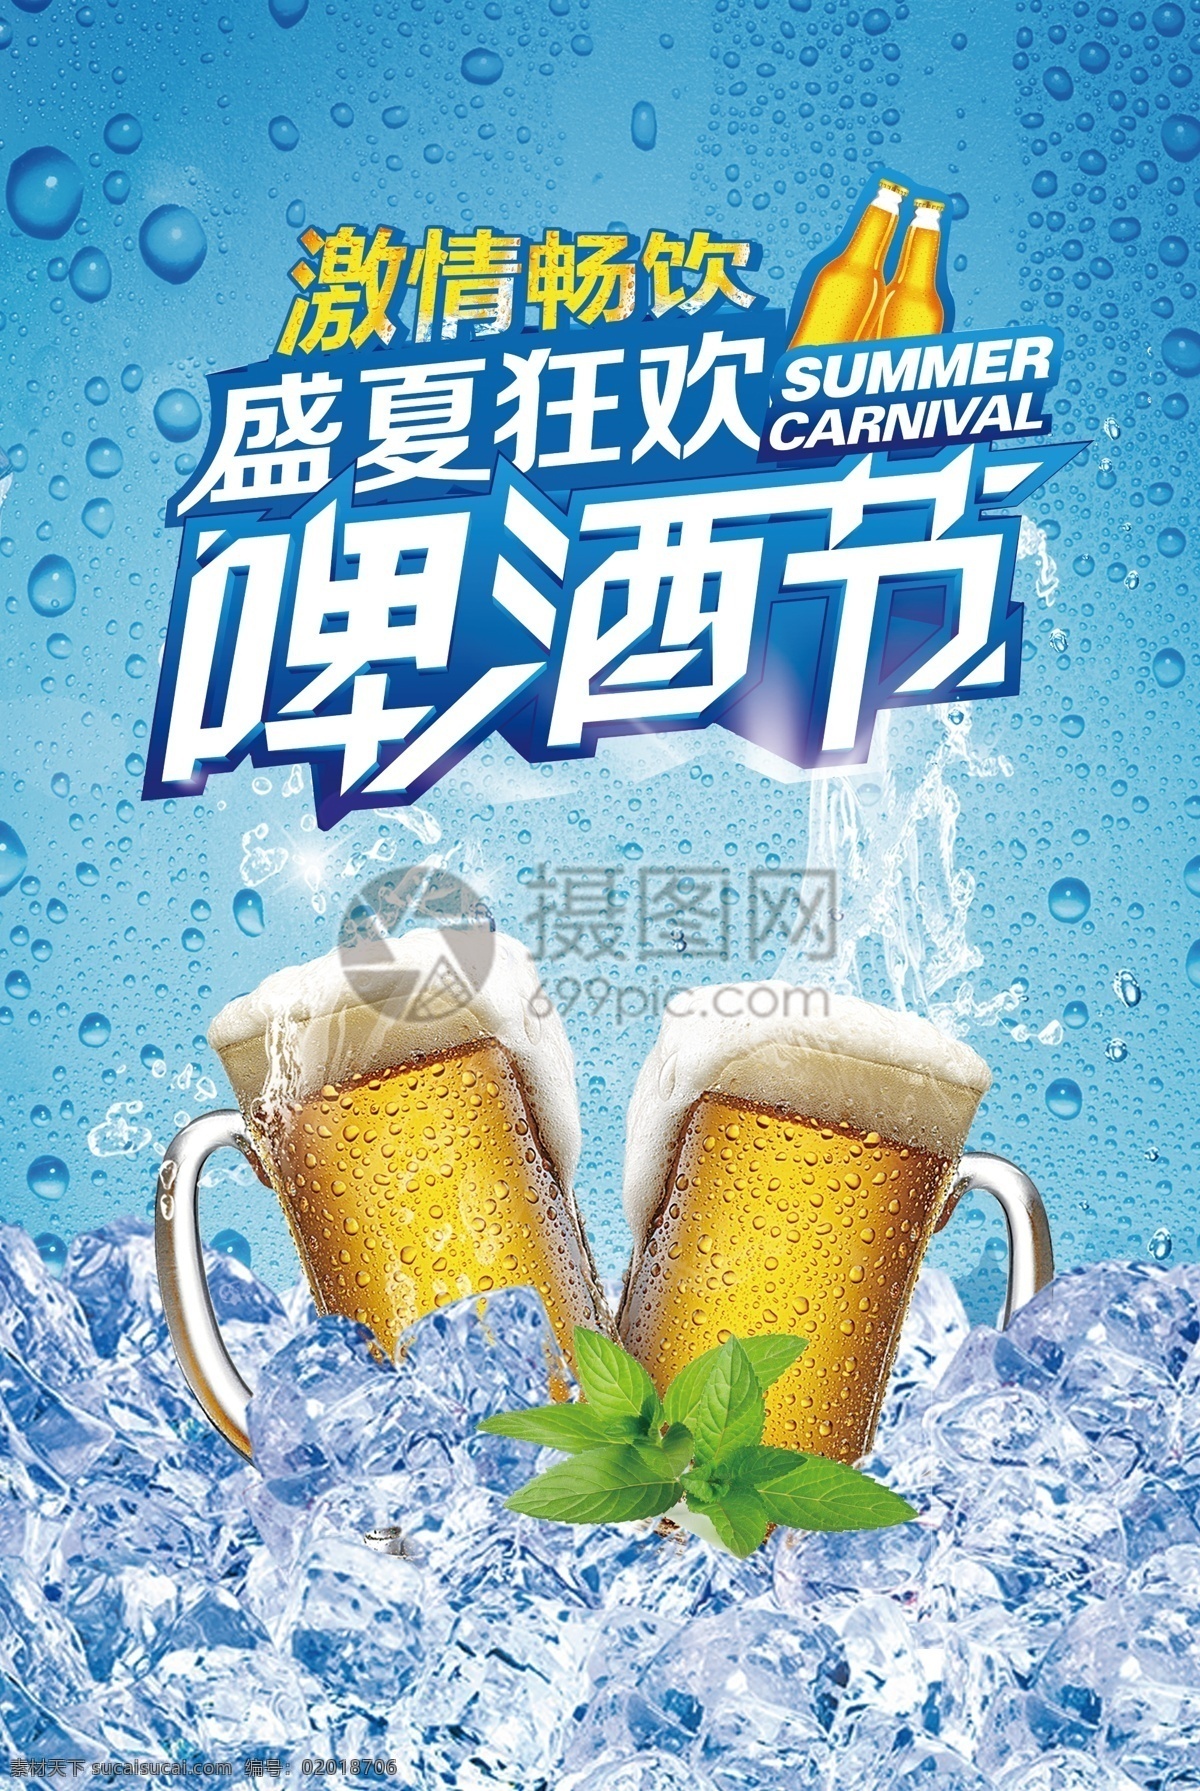 蓝色 清爽 啤酒节 海报 啤酒 盛夏狂欢 干杯 冰爽 畅饮 冰啤酒 饮料 饮品 啤酒狂欢